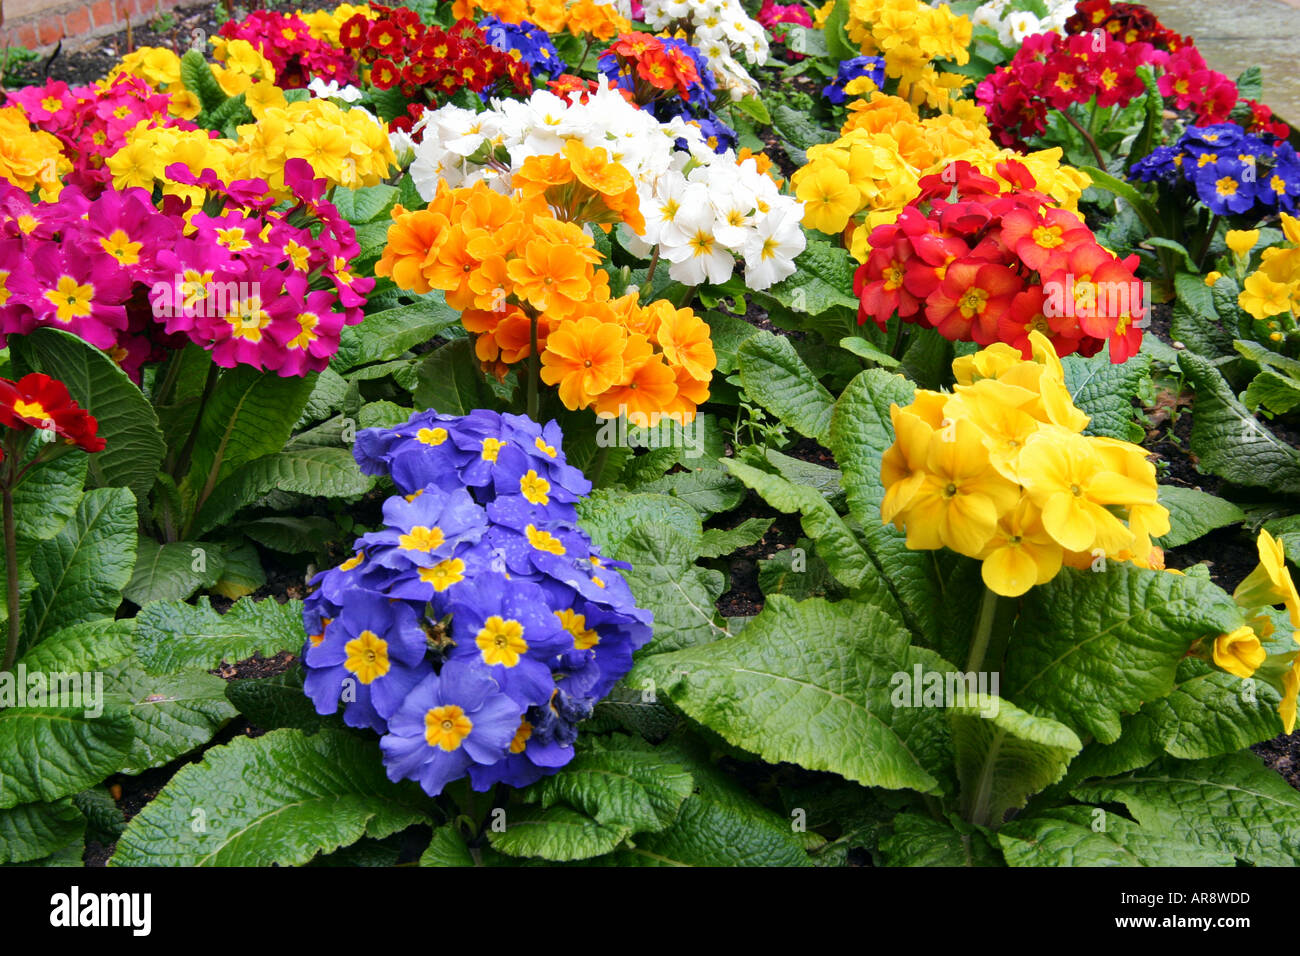 Farbenfrohe Ausstellung verschiedener Kulturblumen in einem British Garden in London Stockfoto